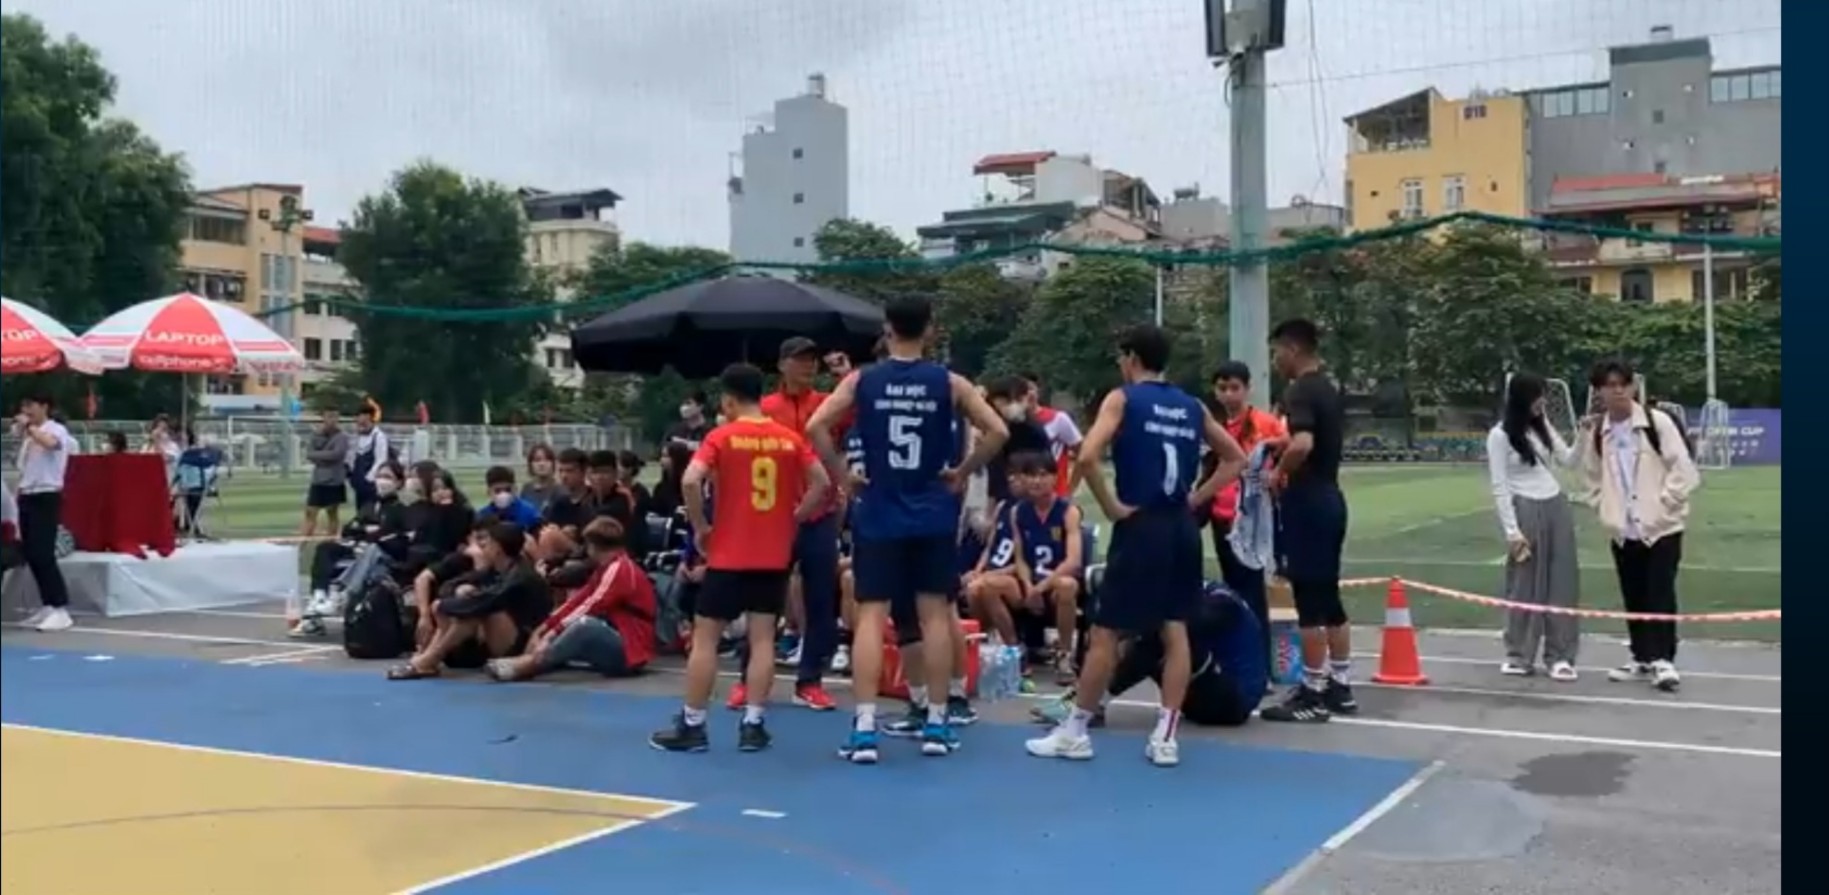 Đội tuyển bóng chuyền Trường Đại học Công nghiệp Hà Nội Xuất sắc giành chiến thắng trước trường đại học Xây Dựng trong trận đấu ra quân của vòng bảng.